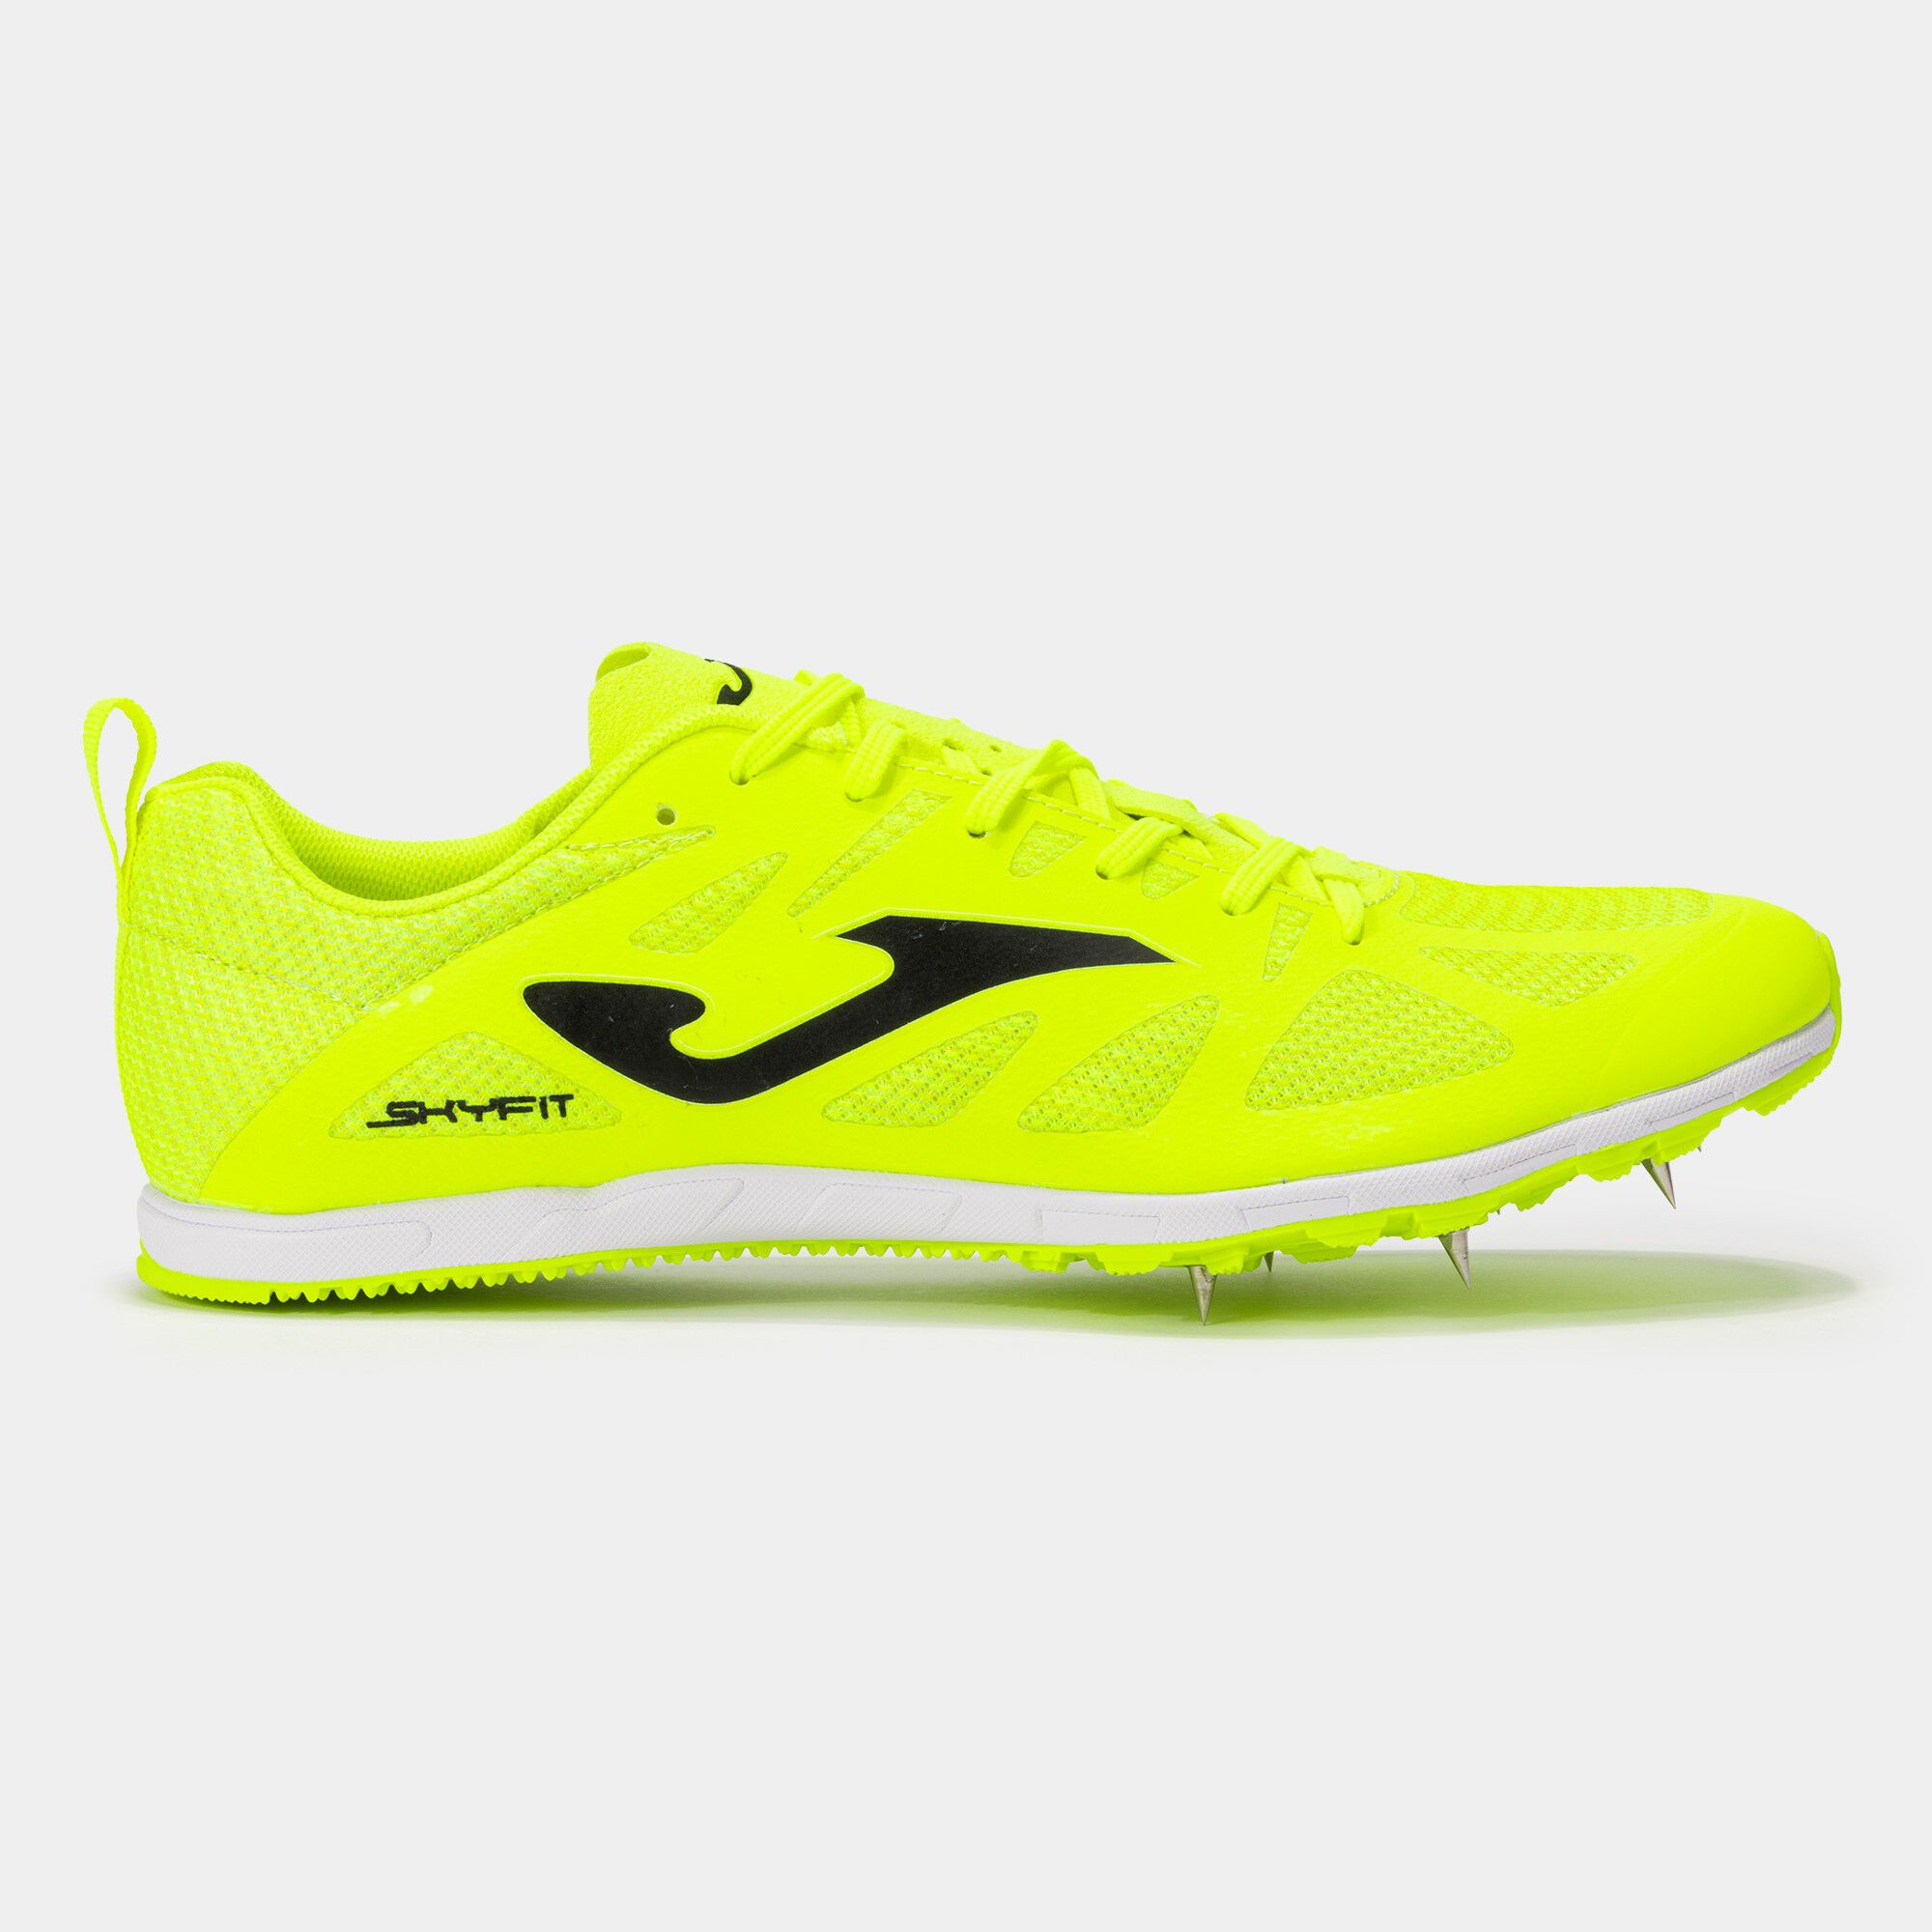 Pantofi sport alergare Skyfit 22 cuie bărbaȚi galben fosforescent